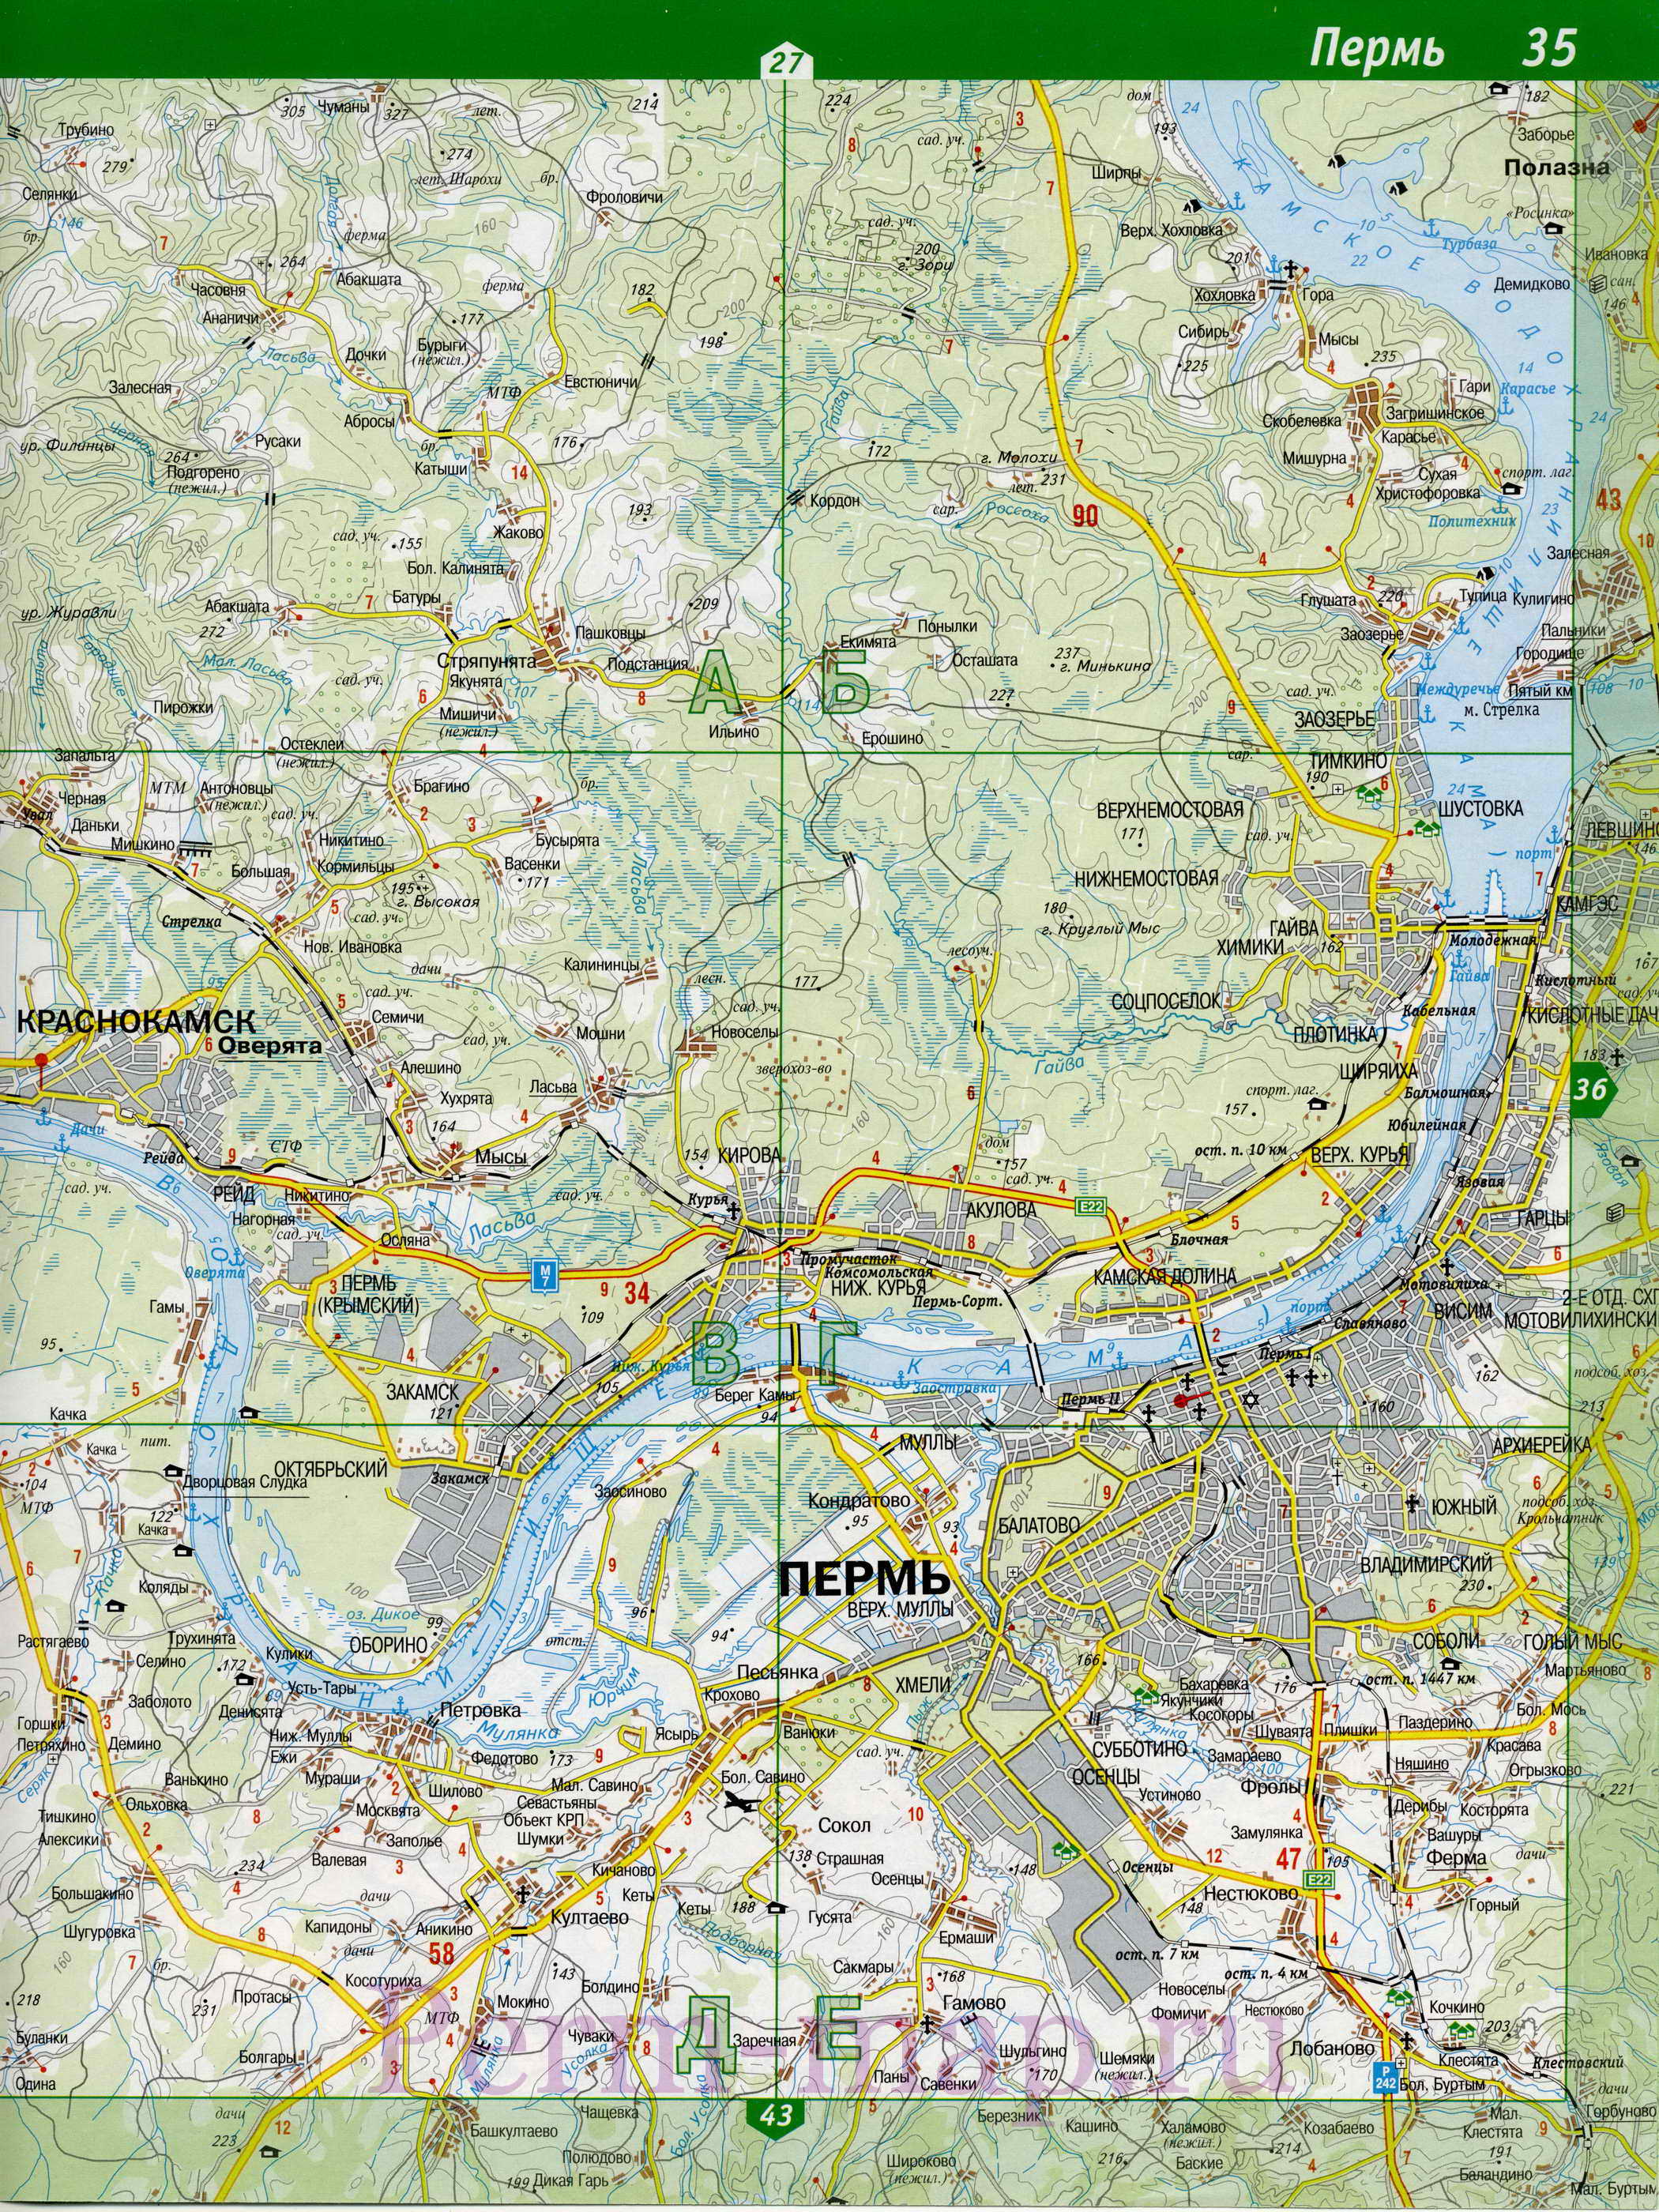 Нытвенский район - топографическая карта. Подробная карта Нытвенского р-на, Пермский край, B0 - 